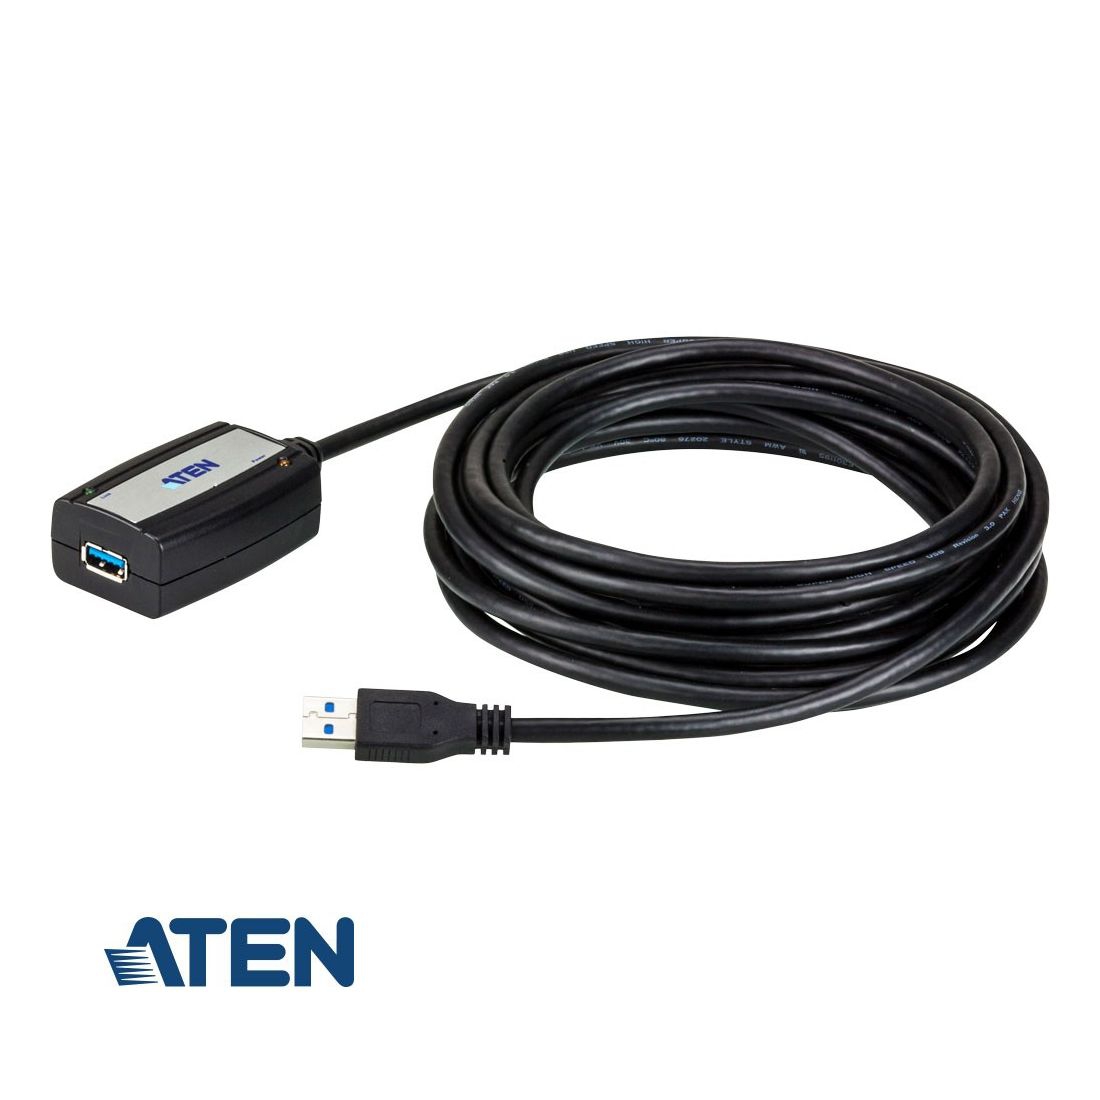 Aktive USB 3.0 Verlängerung UE350A von ATEN 5m